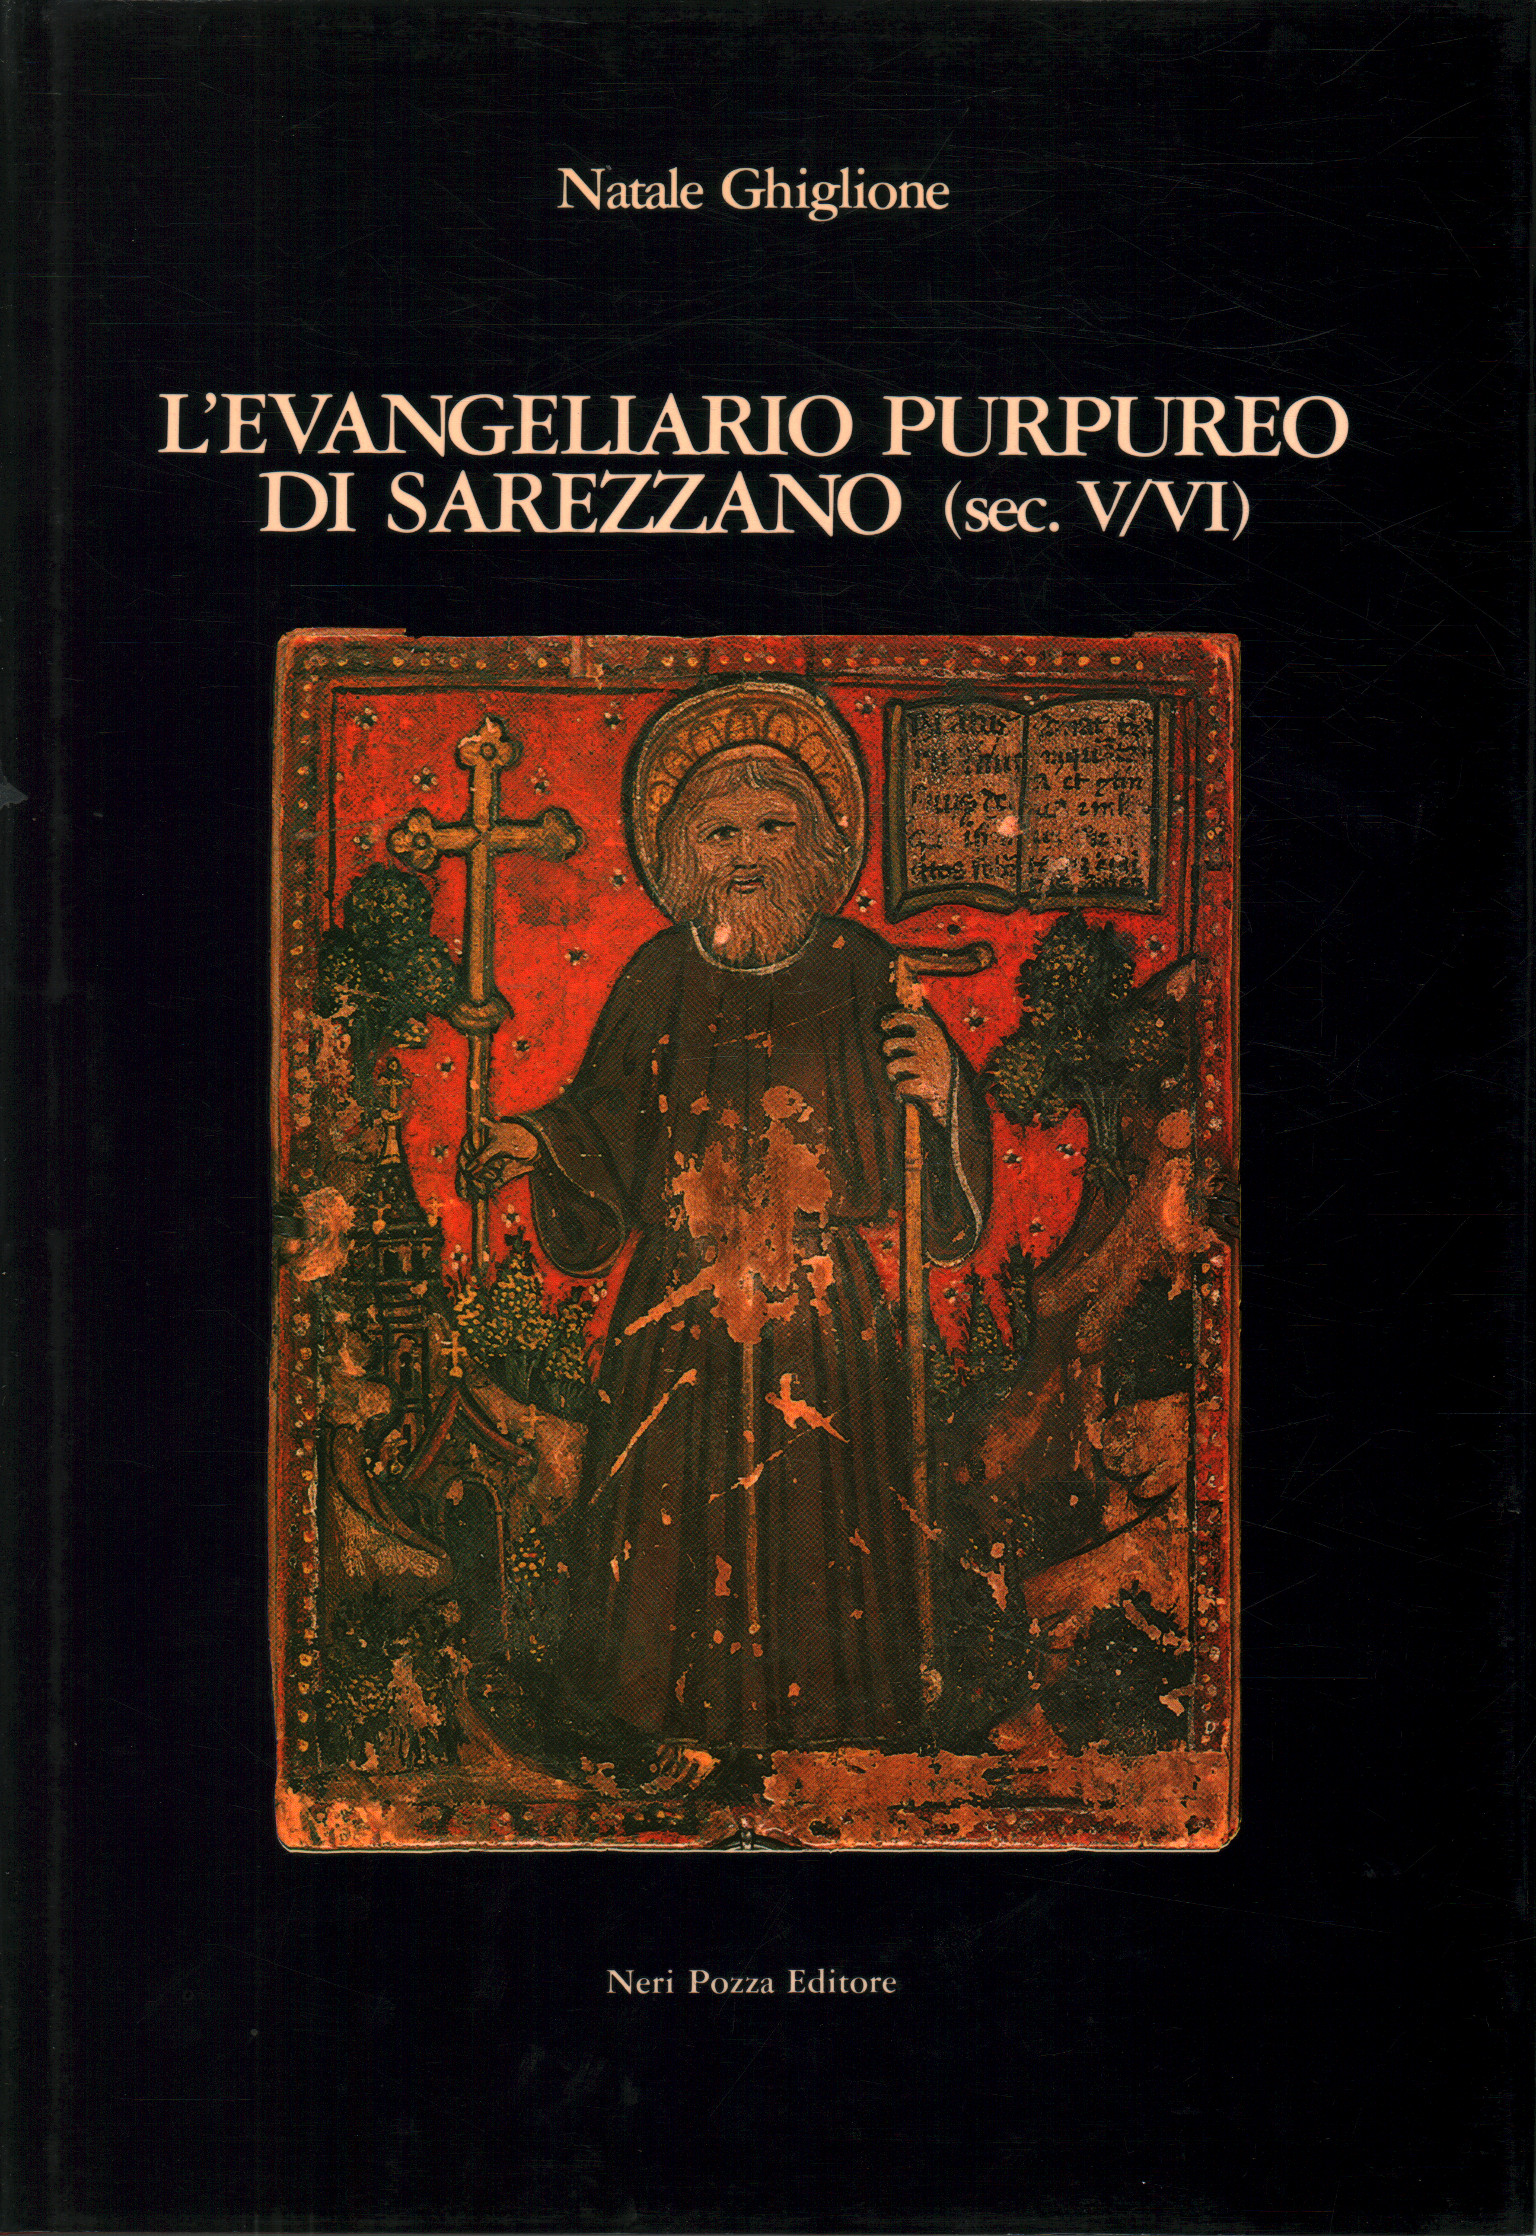 L evangeliario purpure di Sarezzano (sec.V/VI), Natale Ghiglione